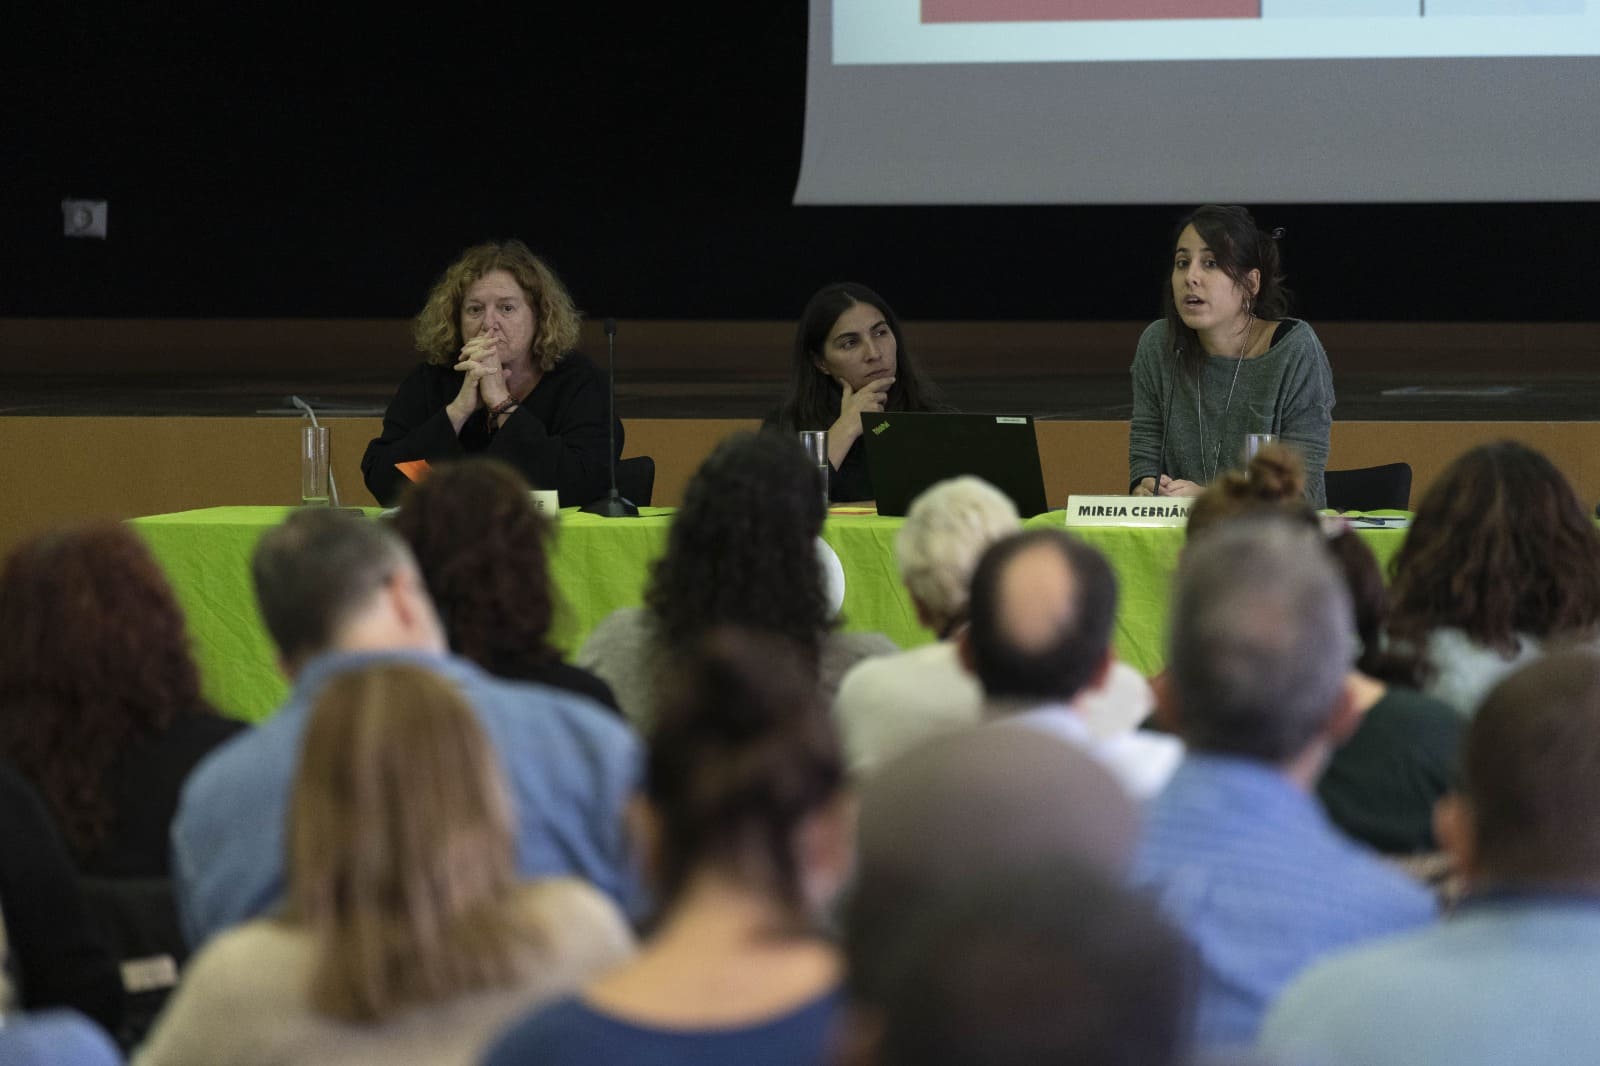 'Activismos desde la sociedad civil' Maite Echarte (Prodein) y Mireia Cebrián (L'Associació), del Programa Doméstico de Oxfam Intermón ©Guillermo Sanz para OXFAM Intermon